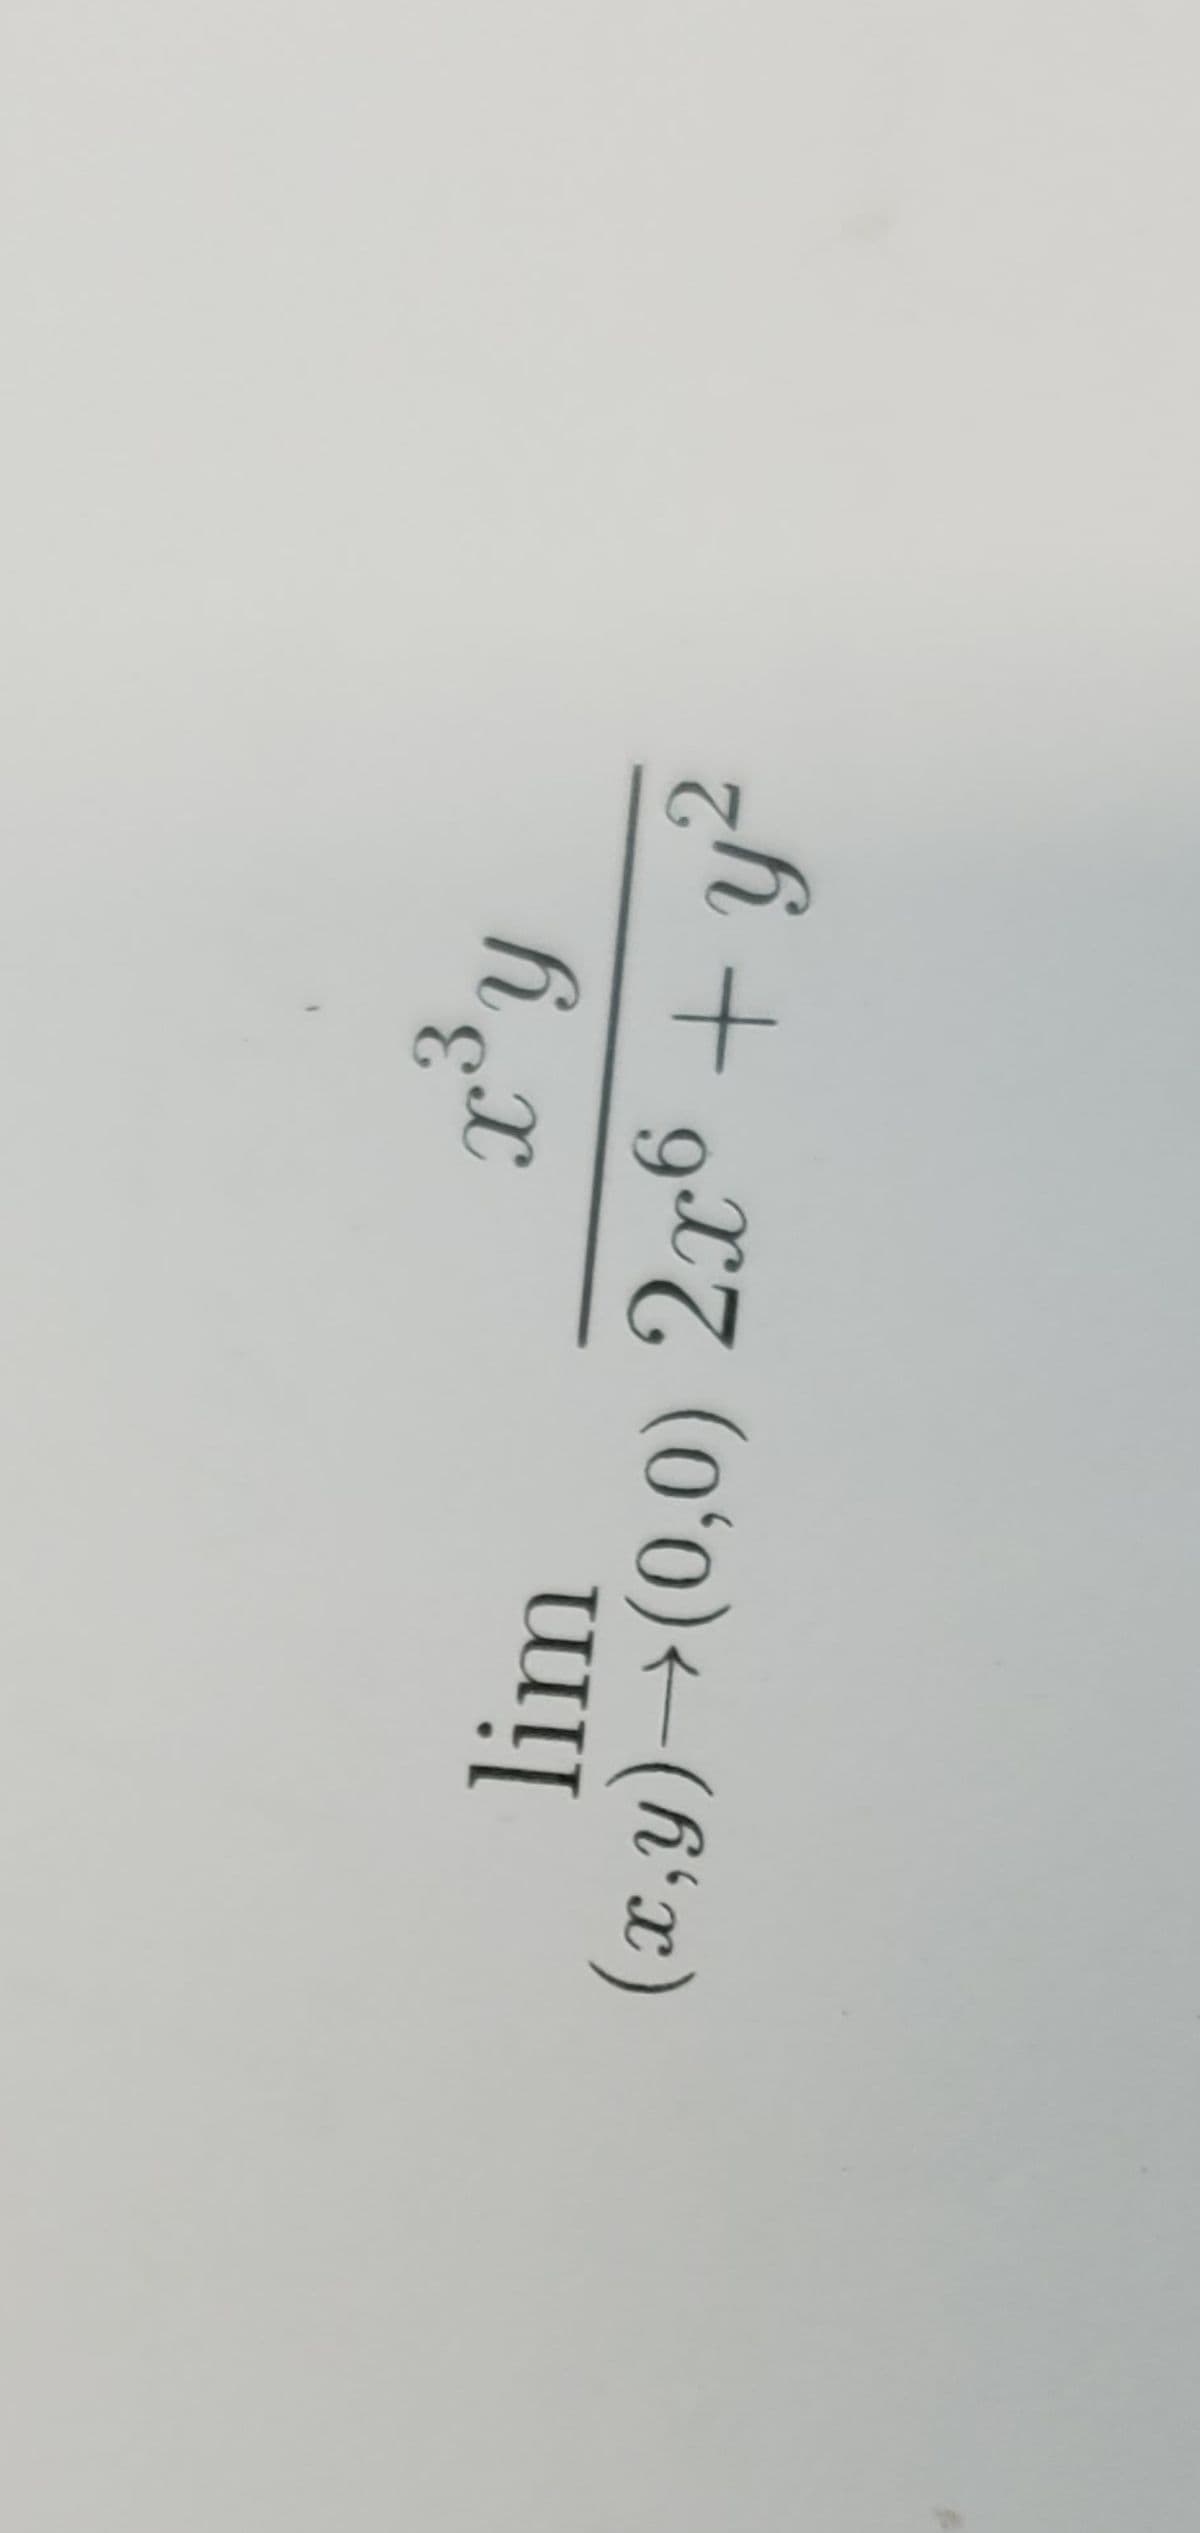 .3
lim
(x,y)→(0,0) 2x6 + y?
